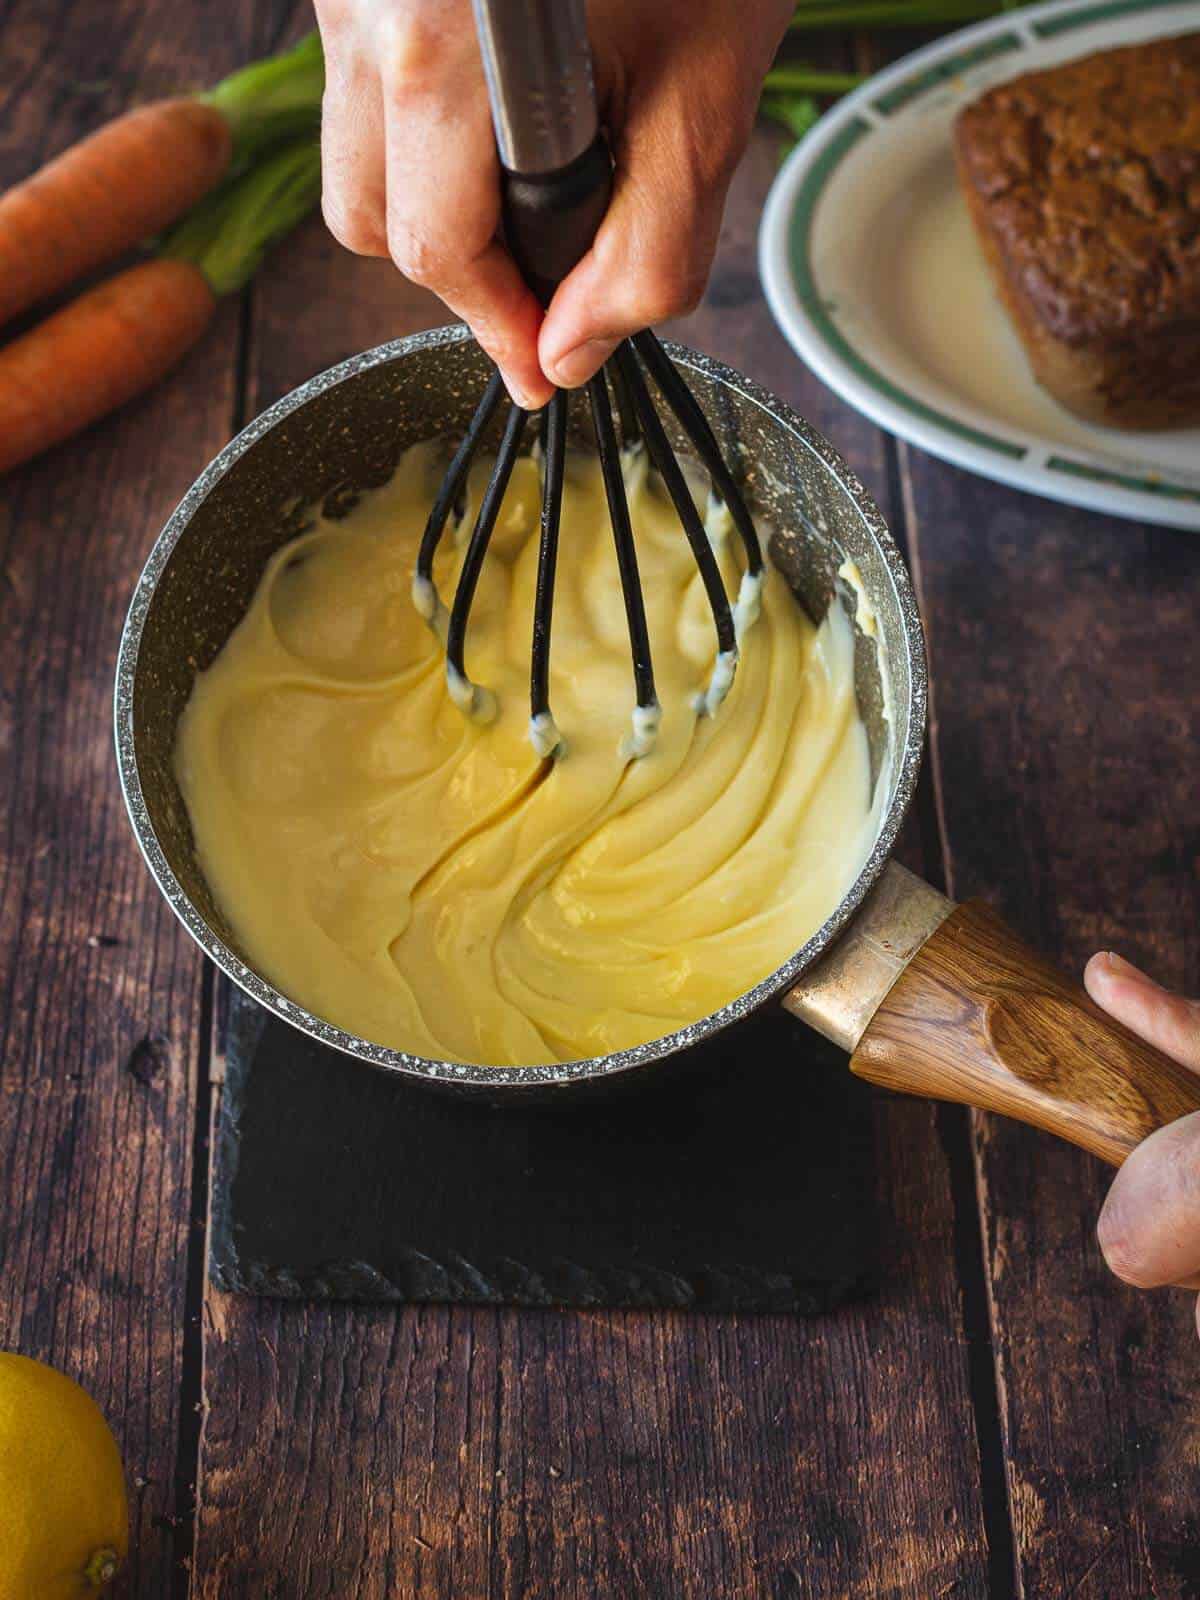 whisking vegan buttercream frosting on top of carrot cake